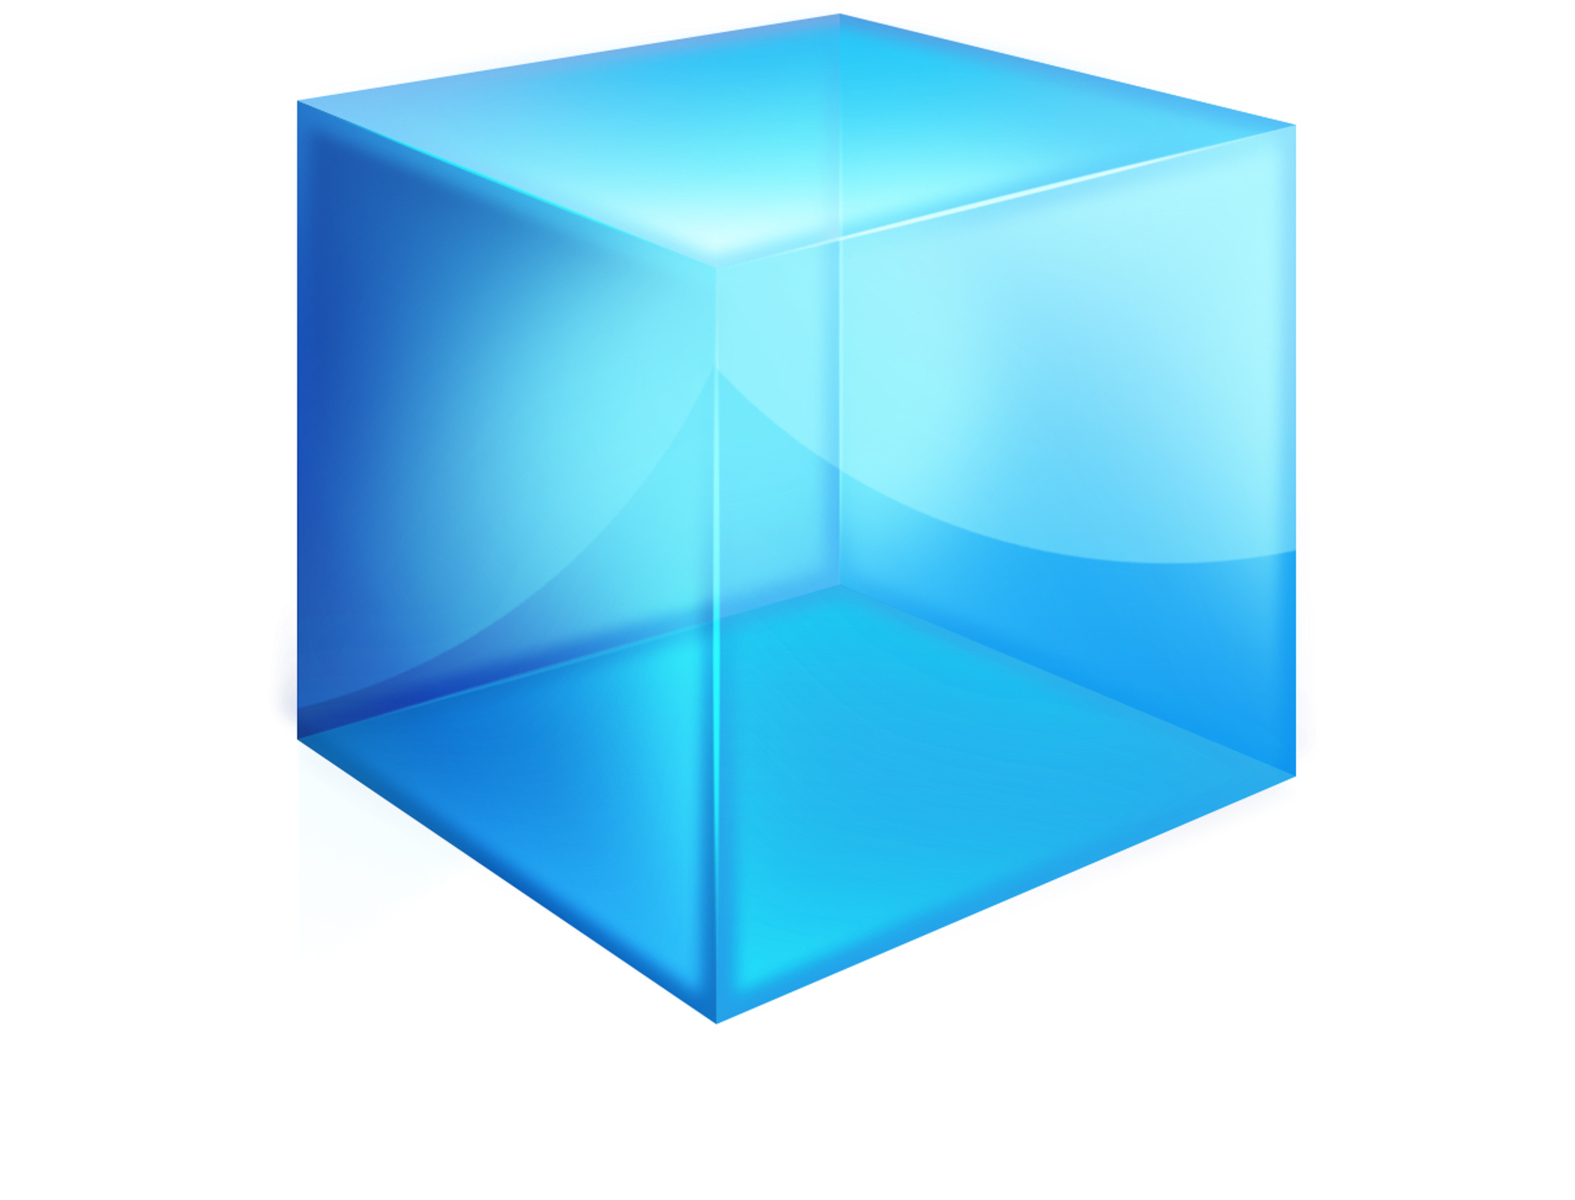 Cube download. Куб. Объемная фигура куб. Трёхмерный куб. Голубой куб.